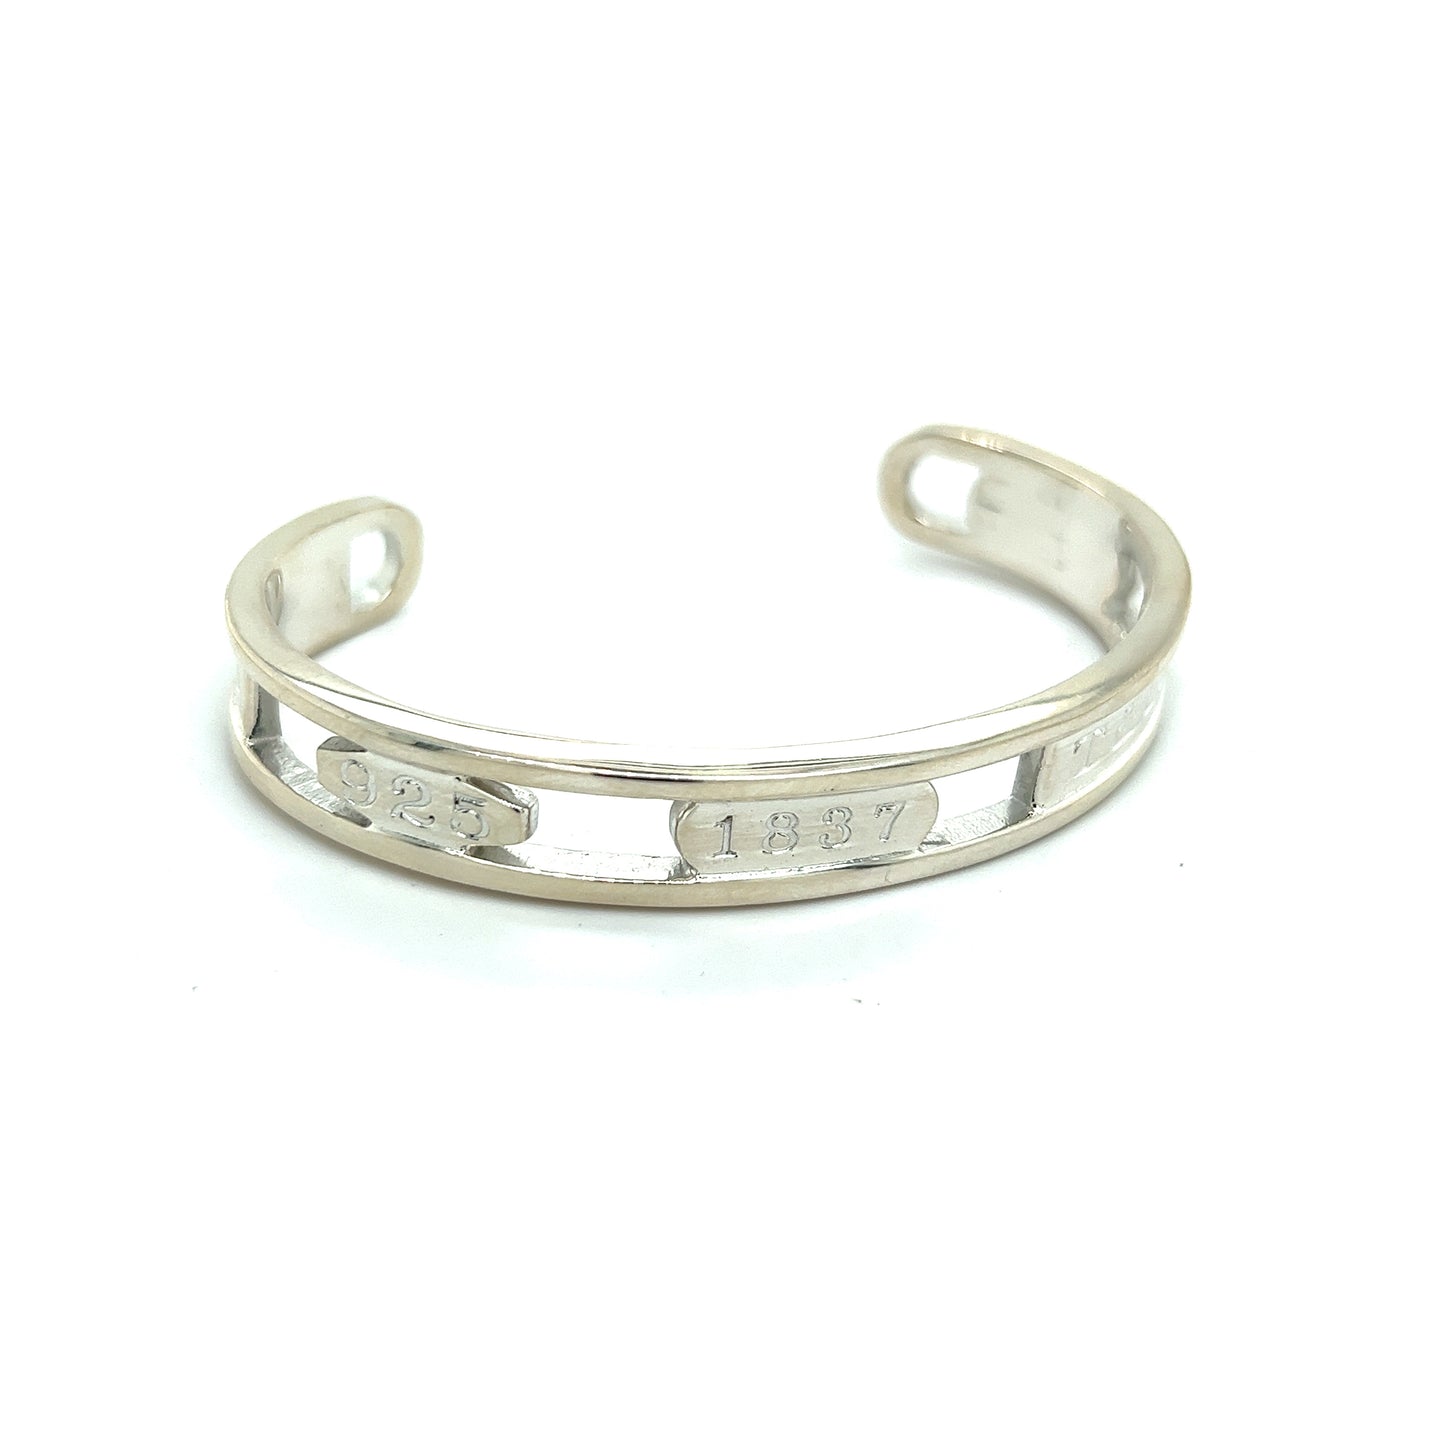 Tiffany & Co Estate 1857 Cuff Bangle Bracelet 8" Sterling Silver TIF318 - Certified Fine Jewelry